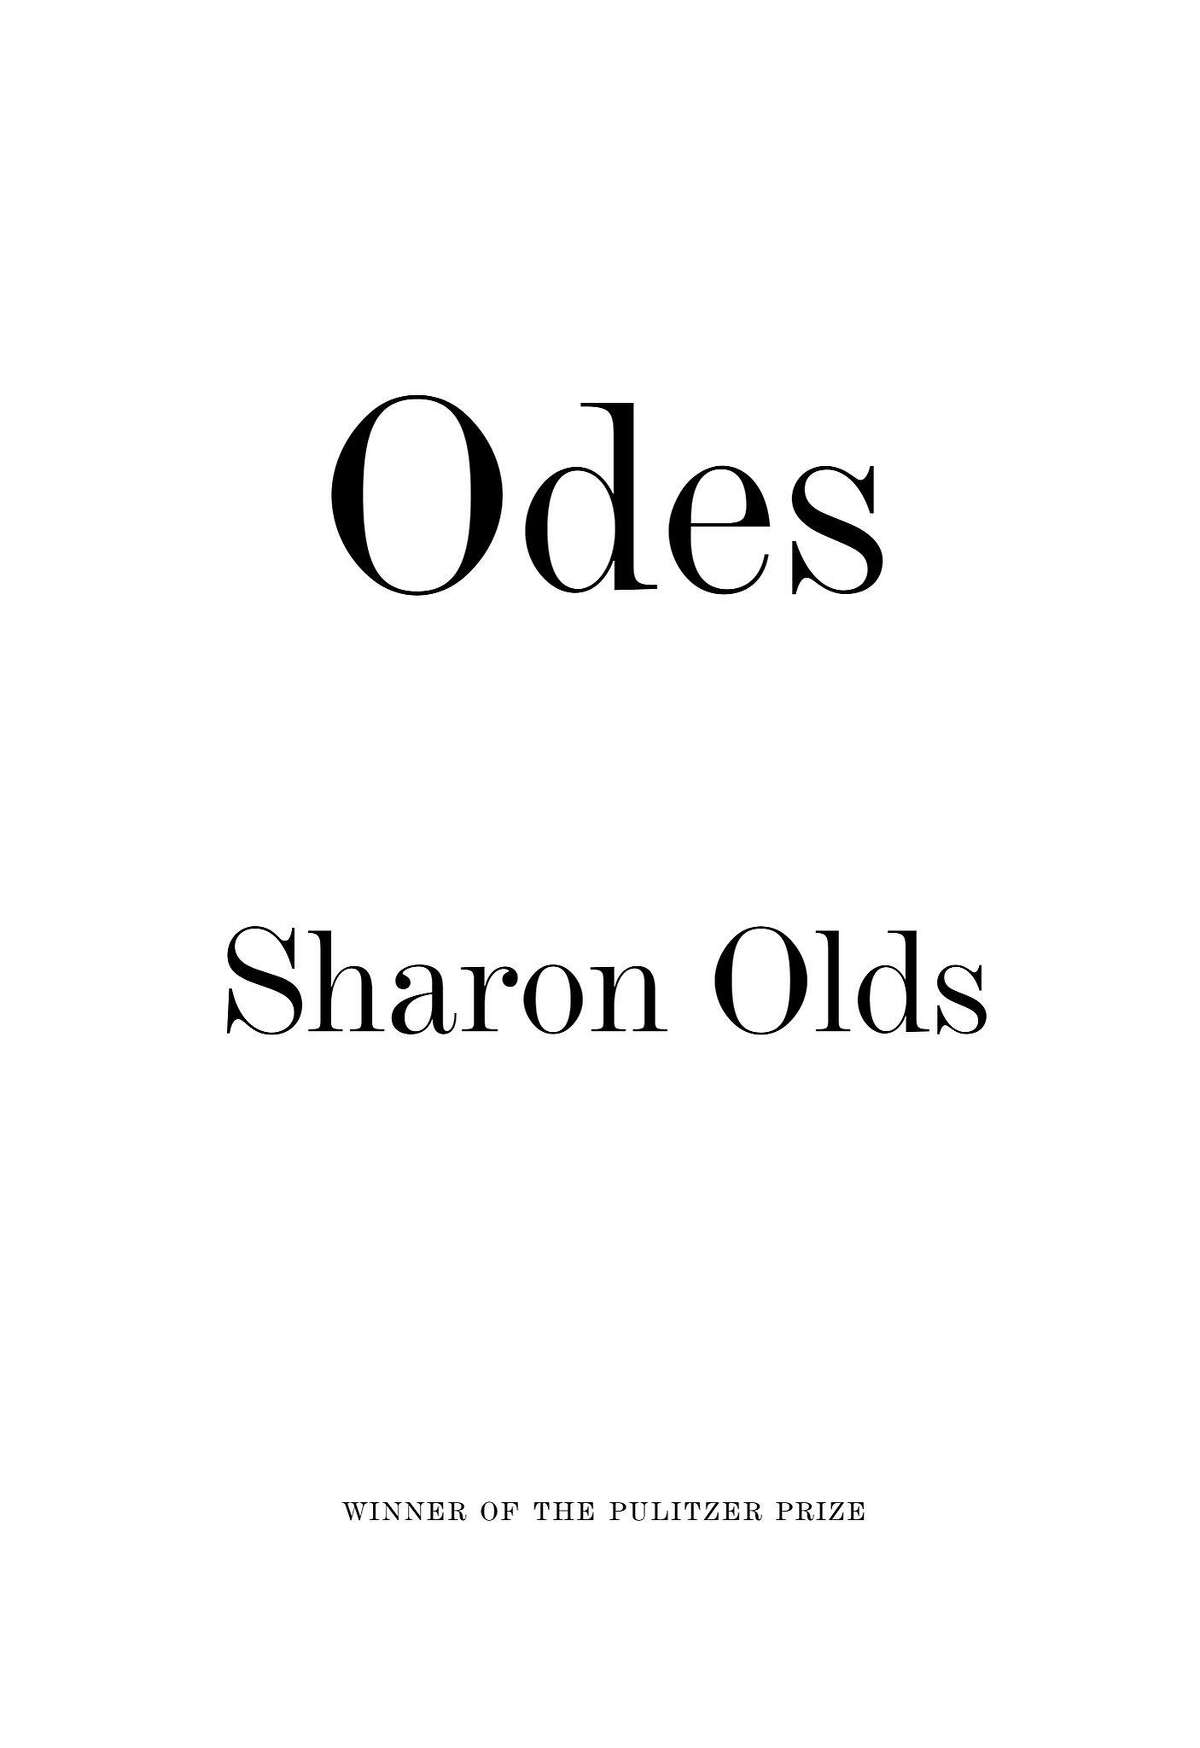 "Odes"